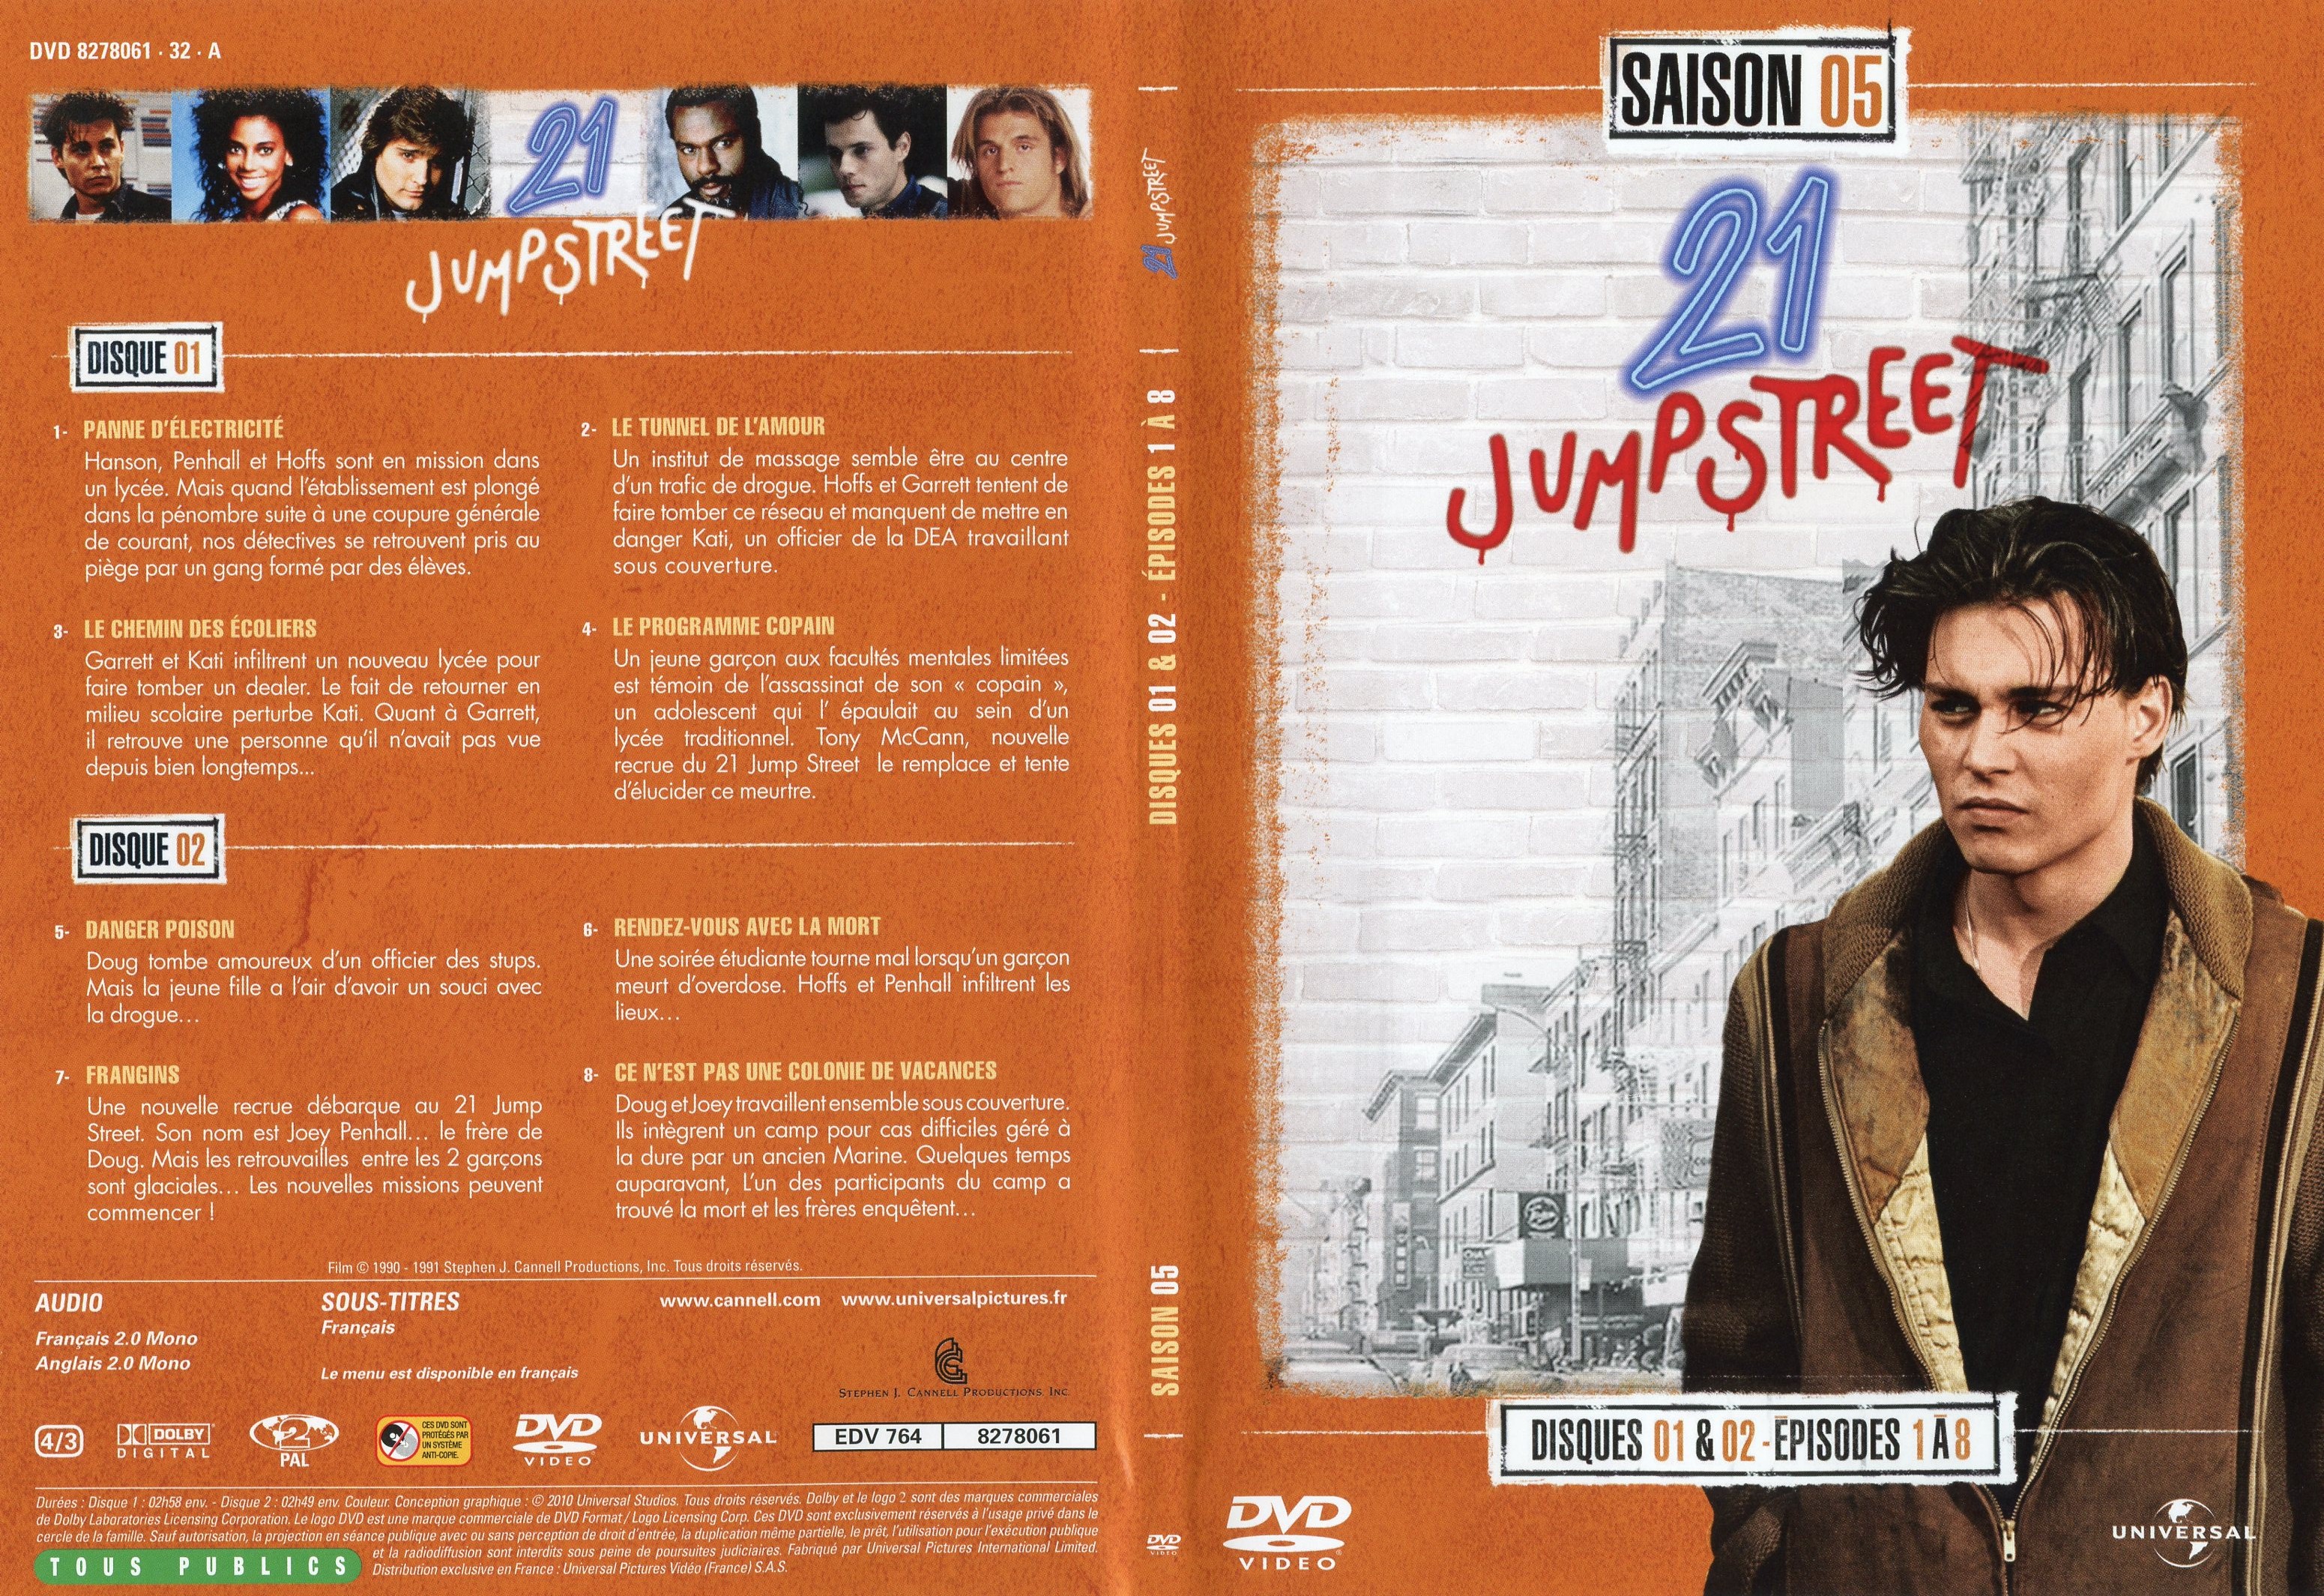 Jaquette DVD 21 jump street Saison 5 DVD 1